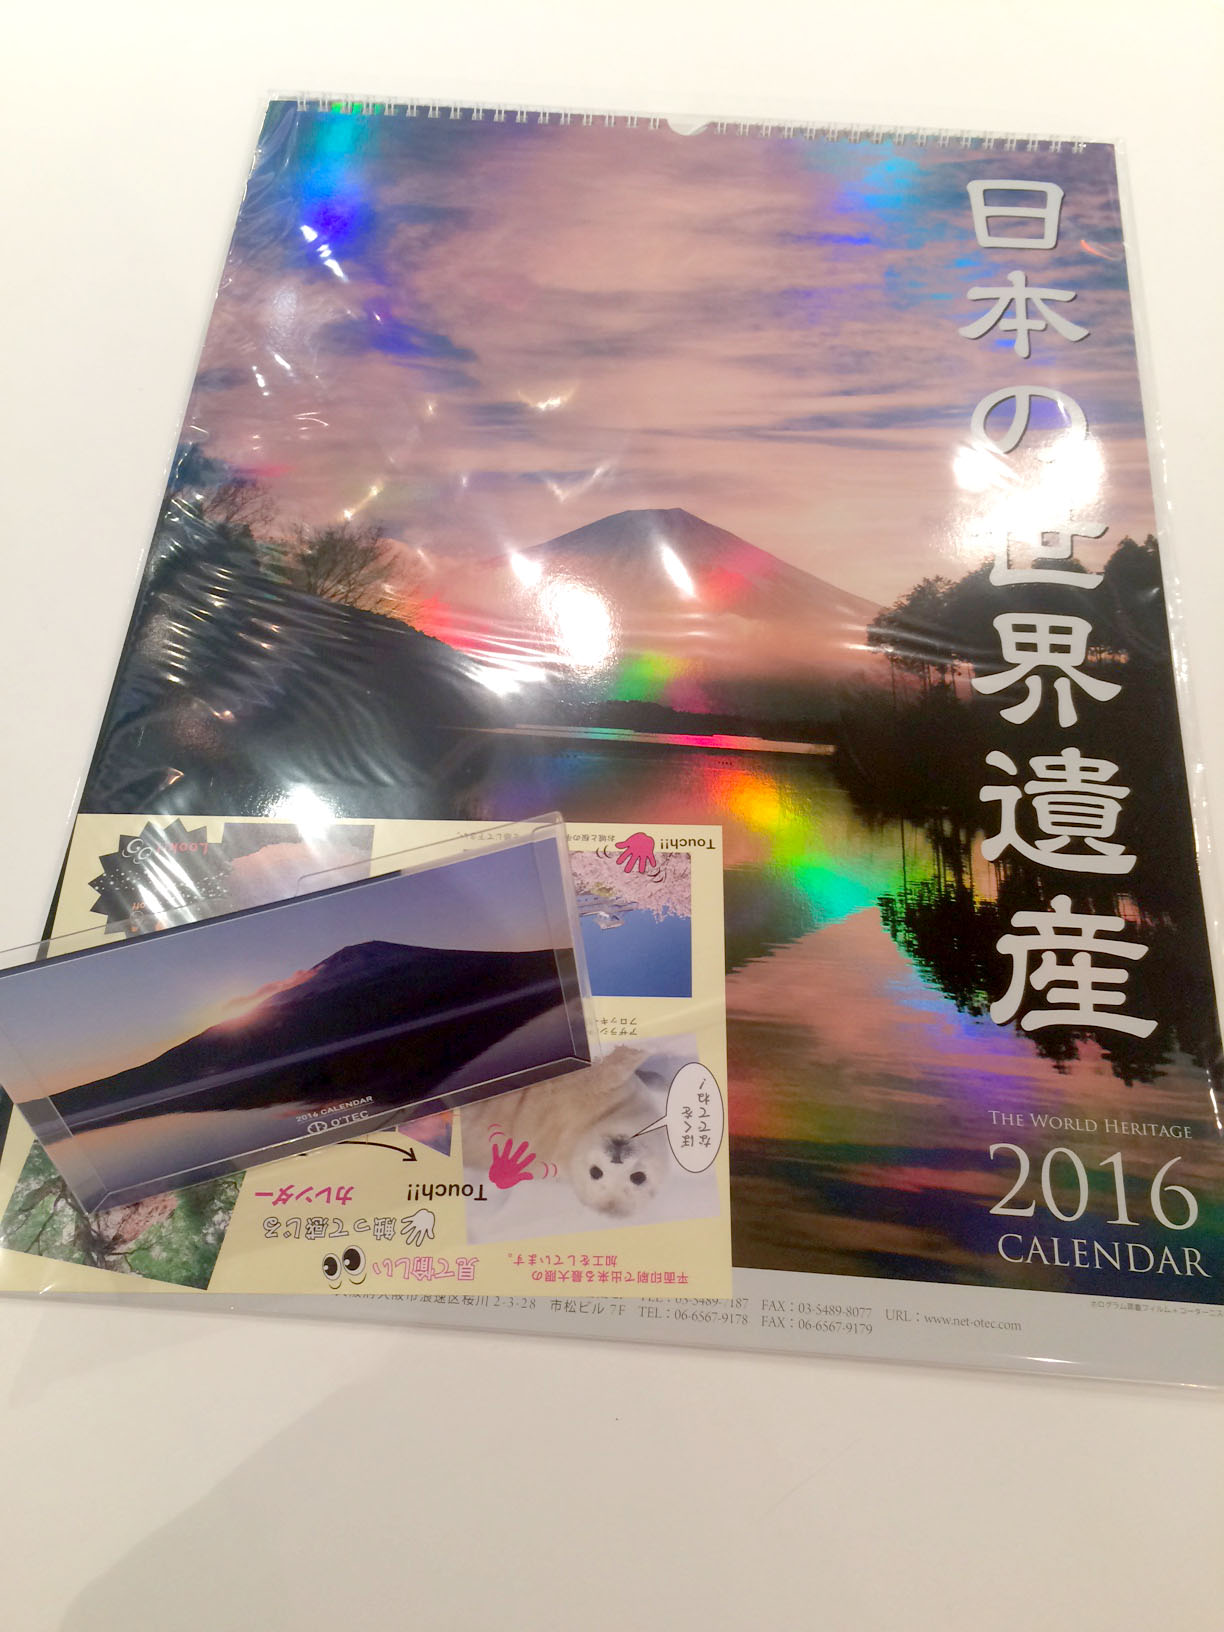 来年のカレンダーをお届けに ホロブログ ホログラム レンチキュラーのオーテック